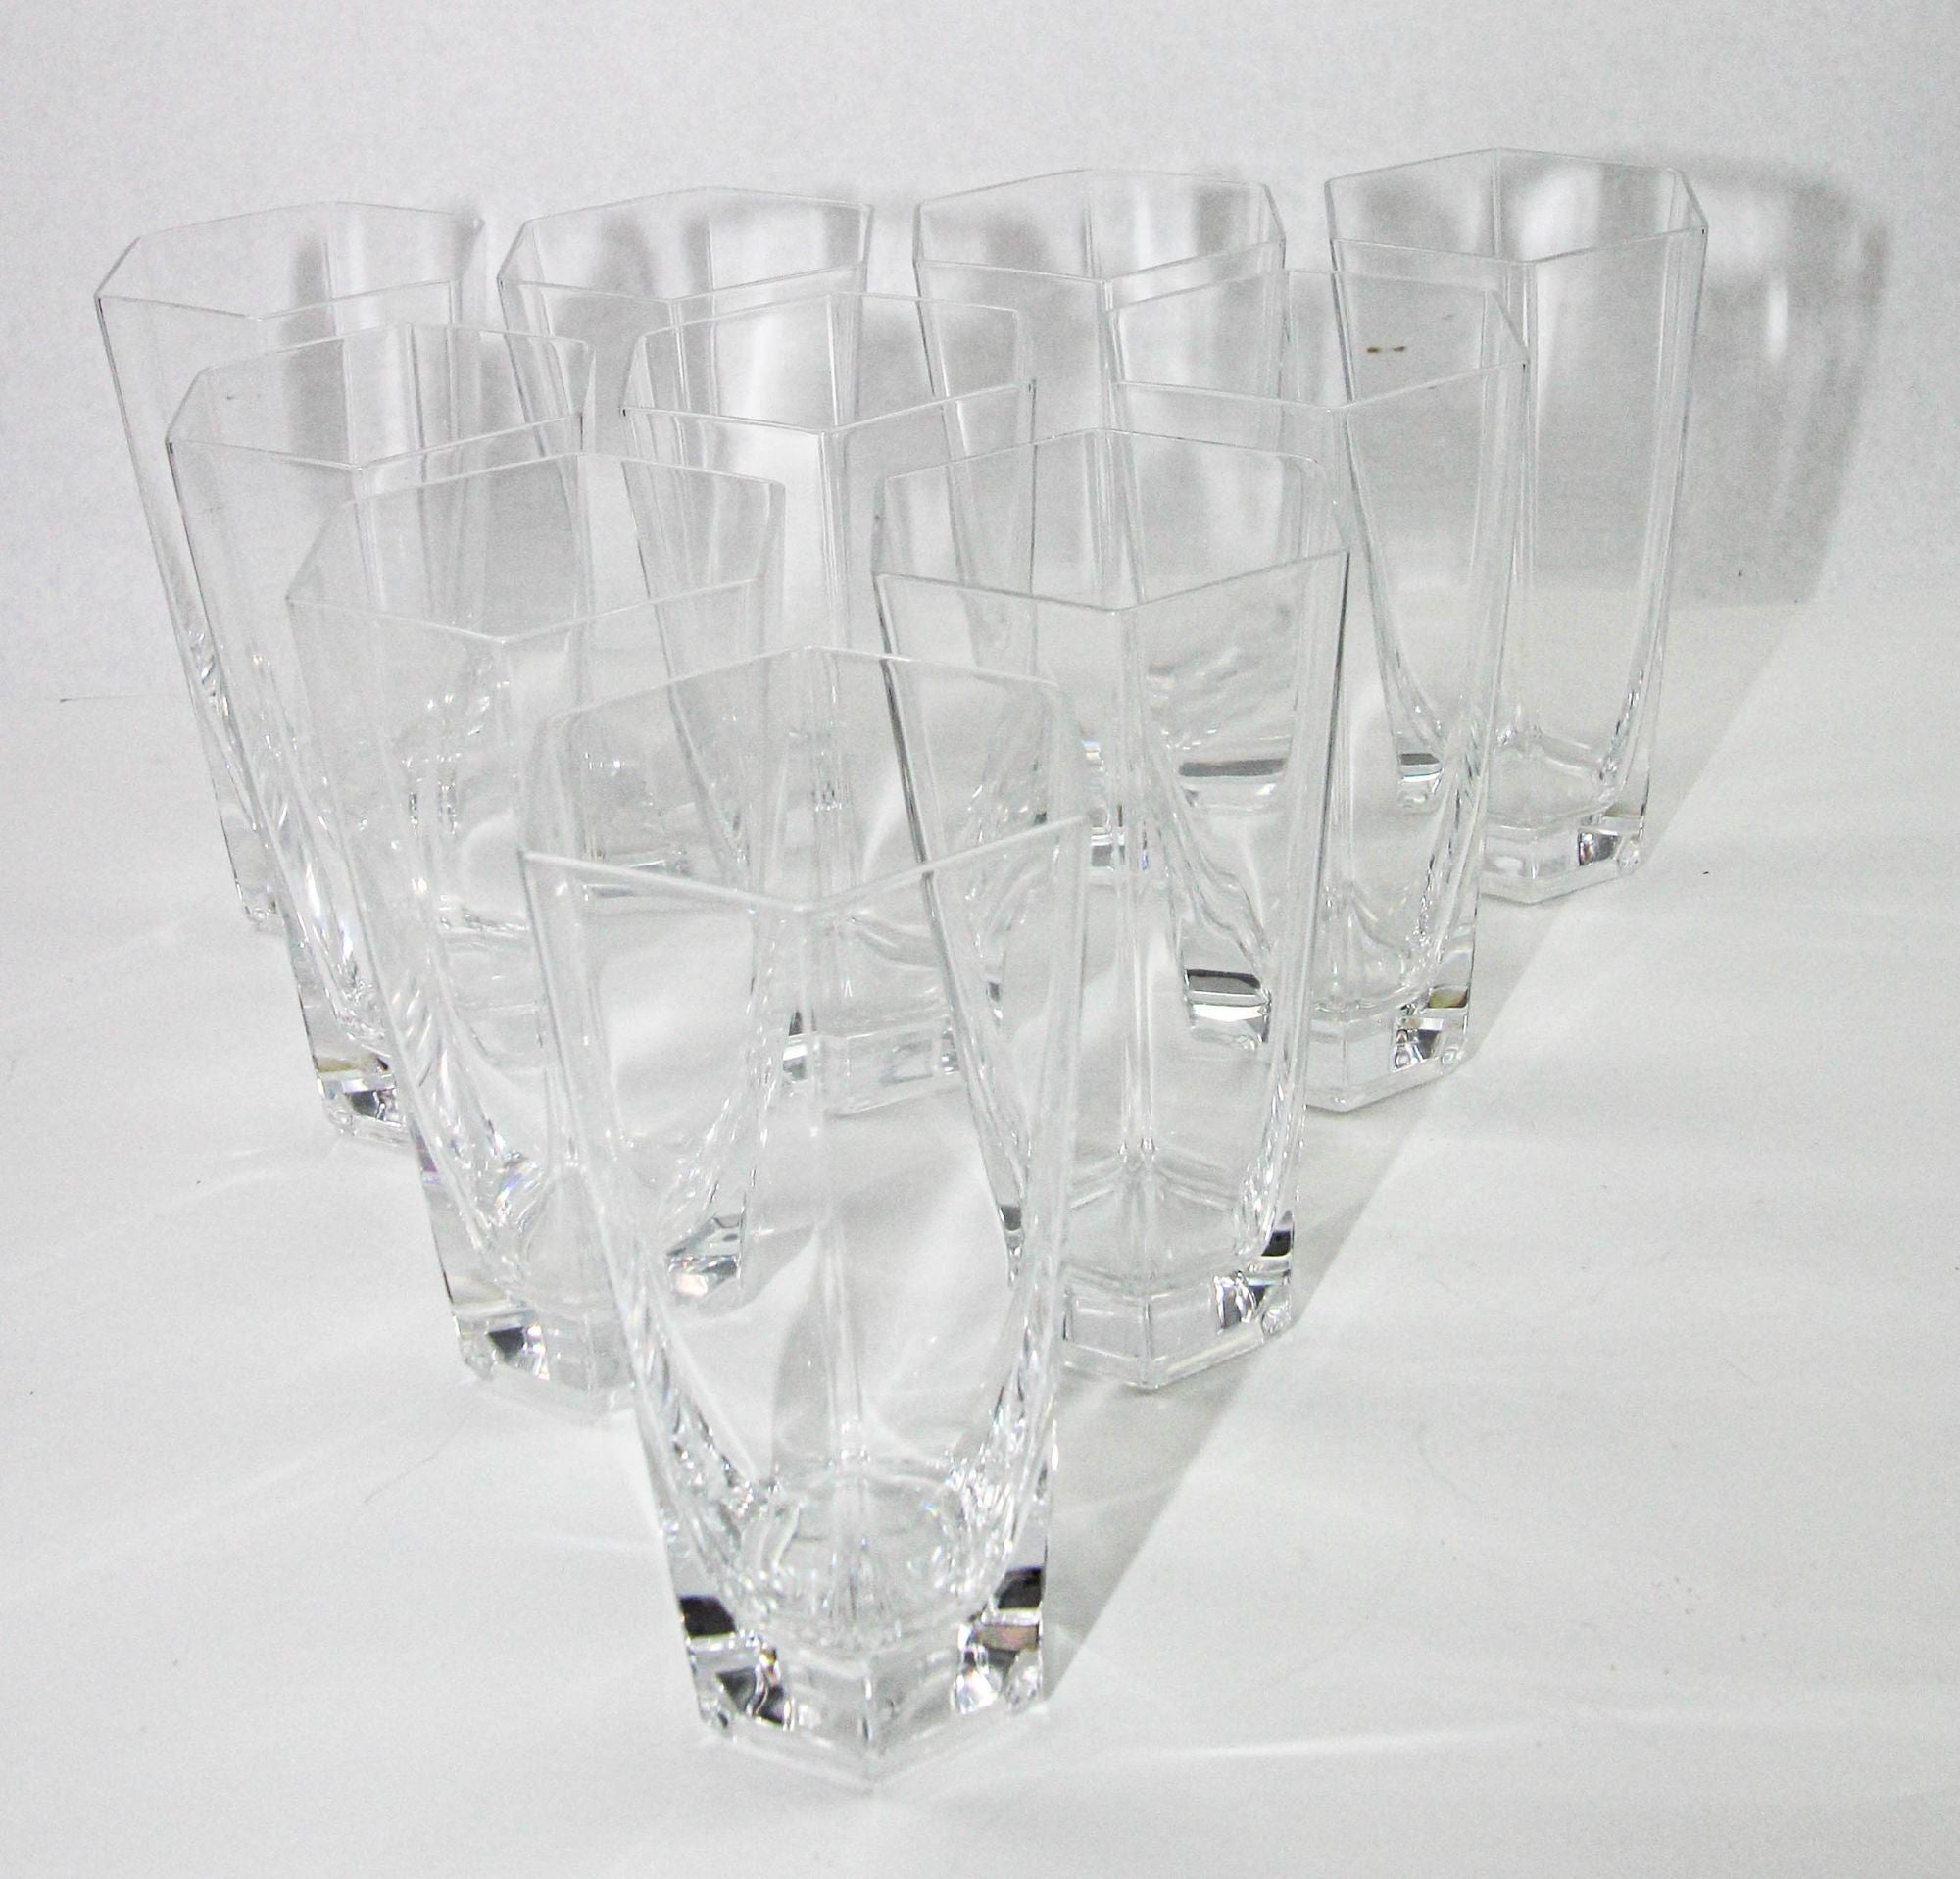 Très rare ensemble de huit verres à boire en cristal de Tiffany & Co. inspirés par la brillance architecturale de Frank Lloyd Wright (Américain, 1867 - 1959). 
Créé vers 1986, chaque verre de cette collection porte la signature gravée sur la base